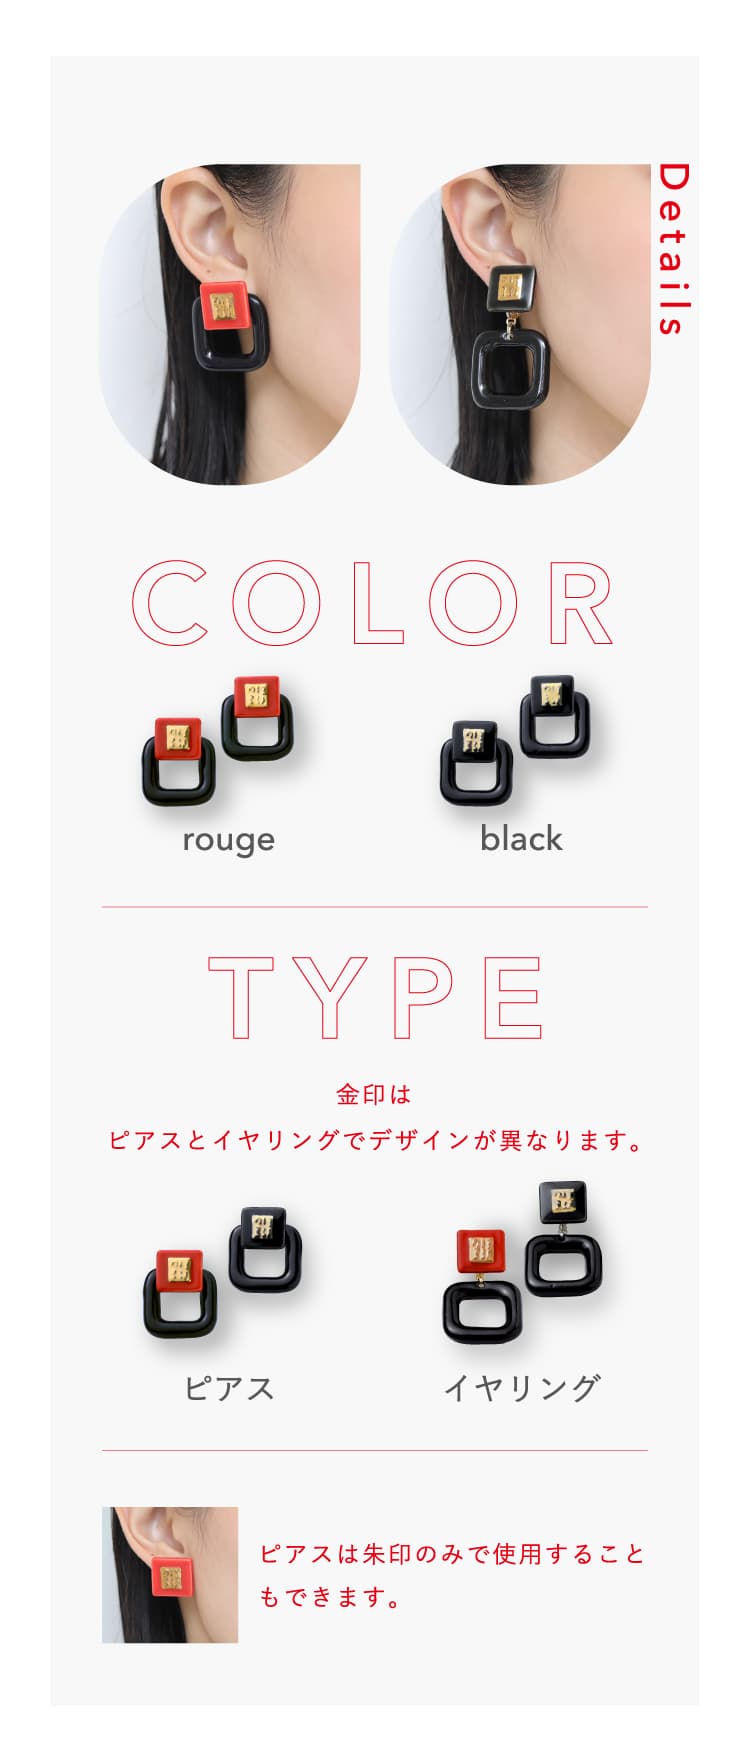 COLOR：ルージュ,ブラック TYPE：ピアス,イヤリング　※ピアスとイヤリングでデザインが異なります。ピアスは朱印部分のみで使用することもできます。